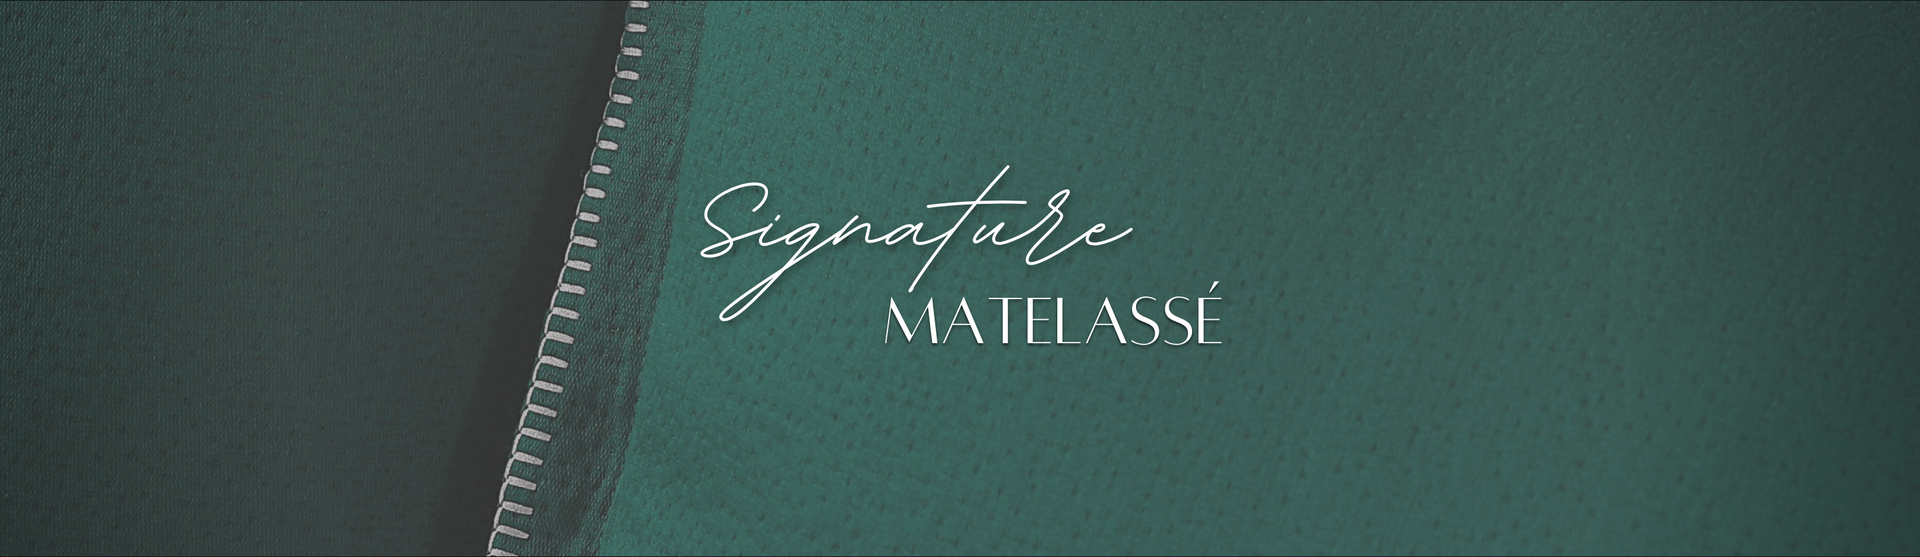 Bedding - Signature - Matelasse